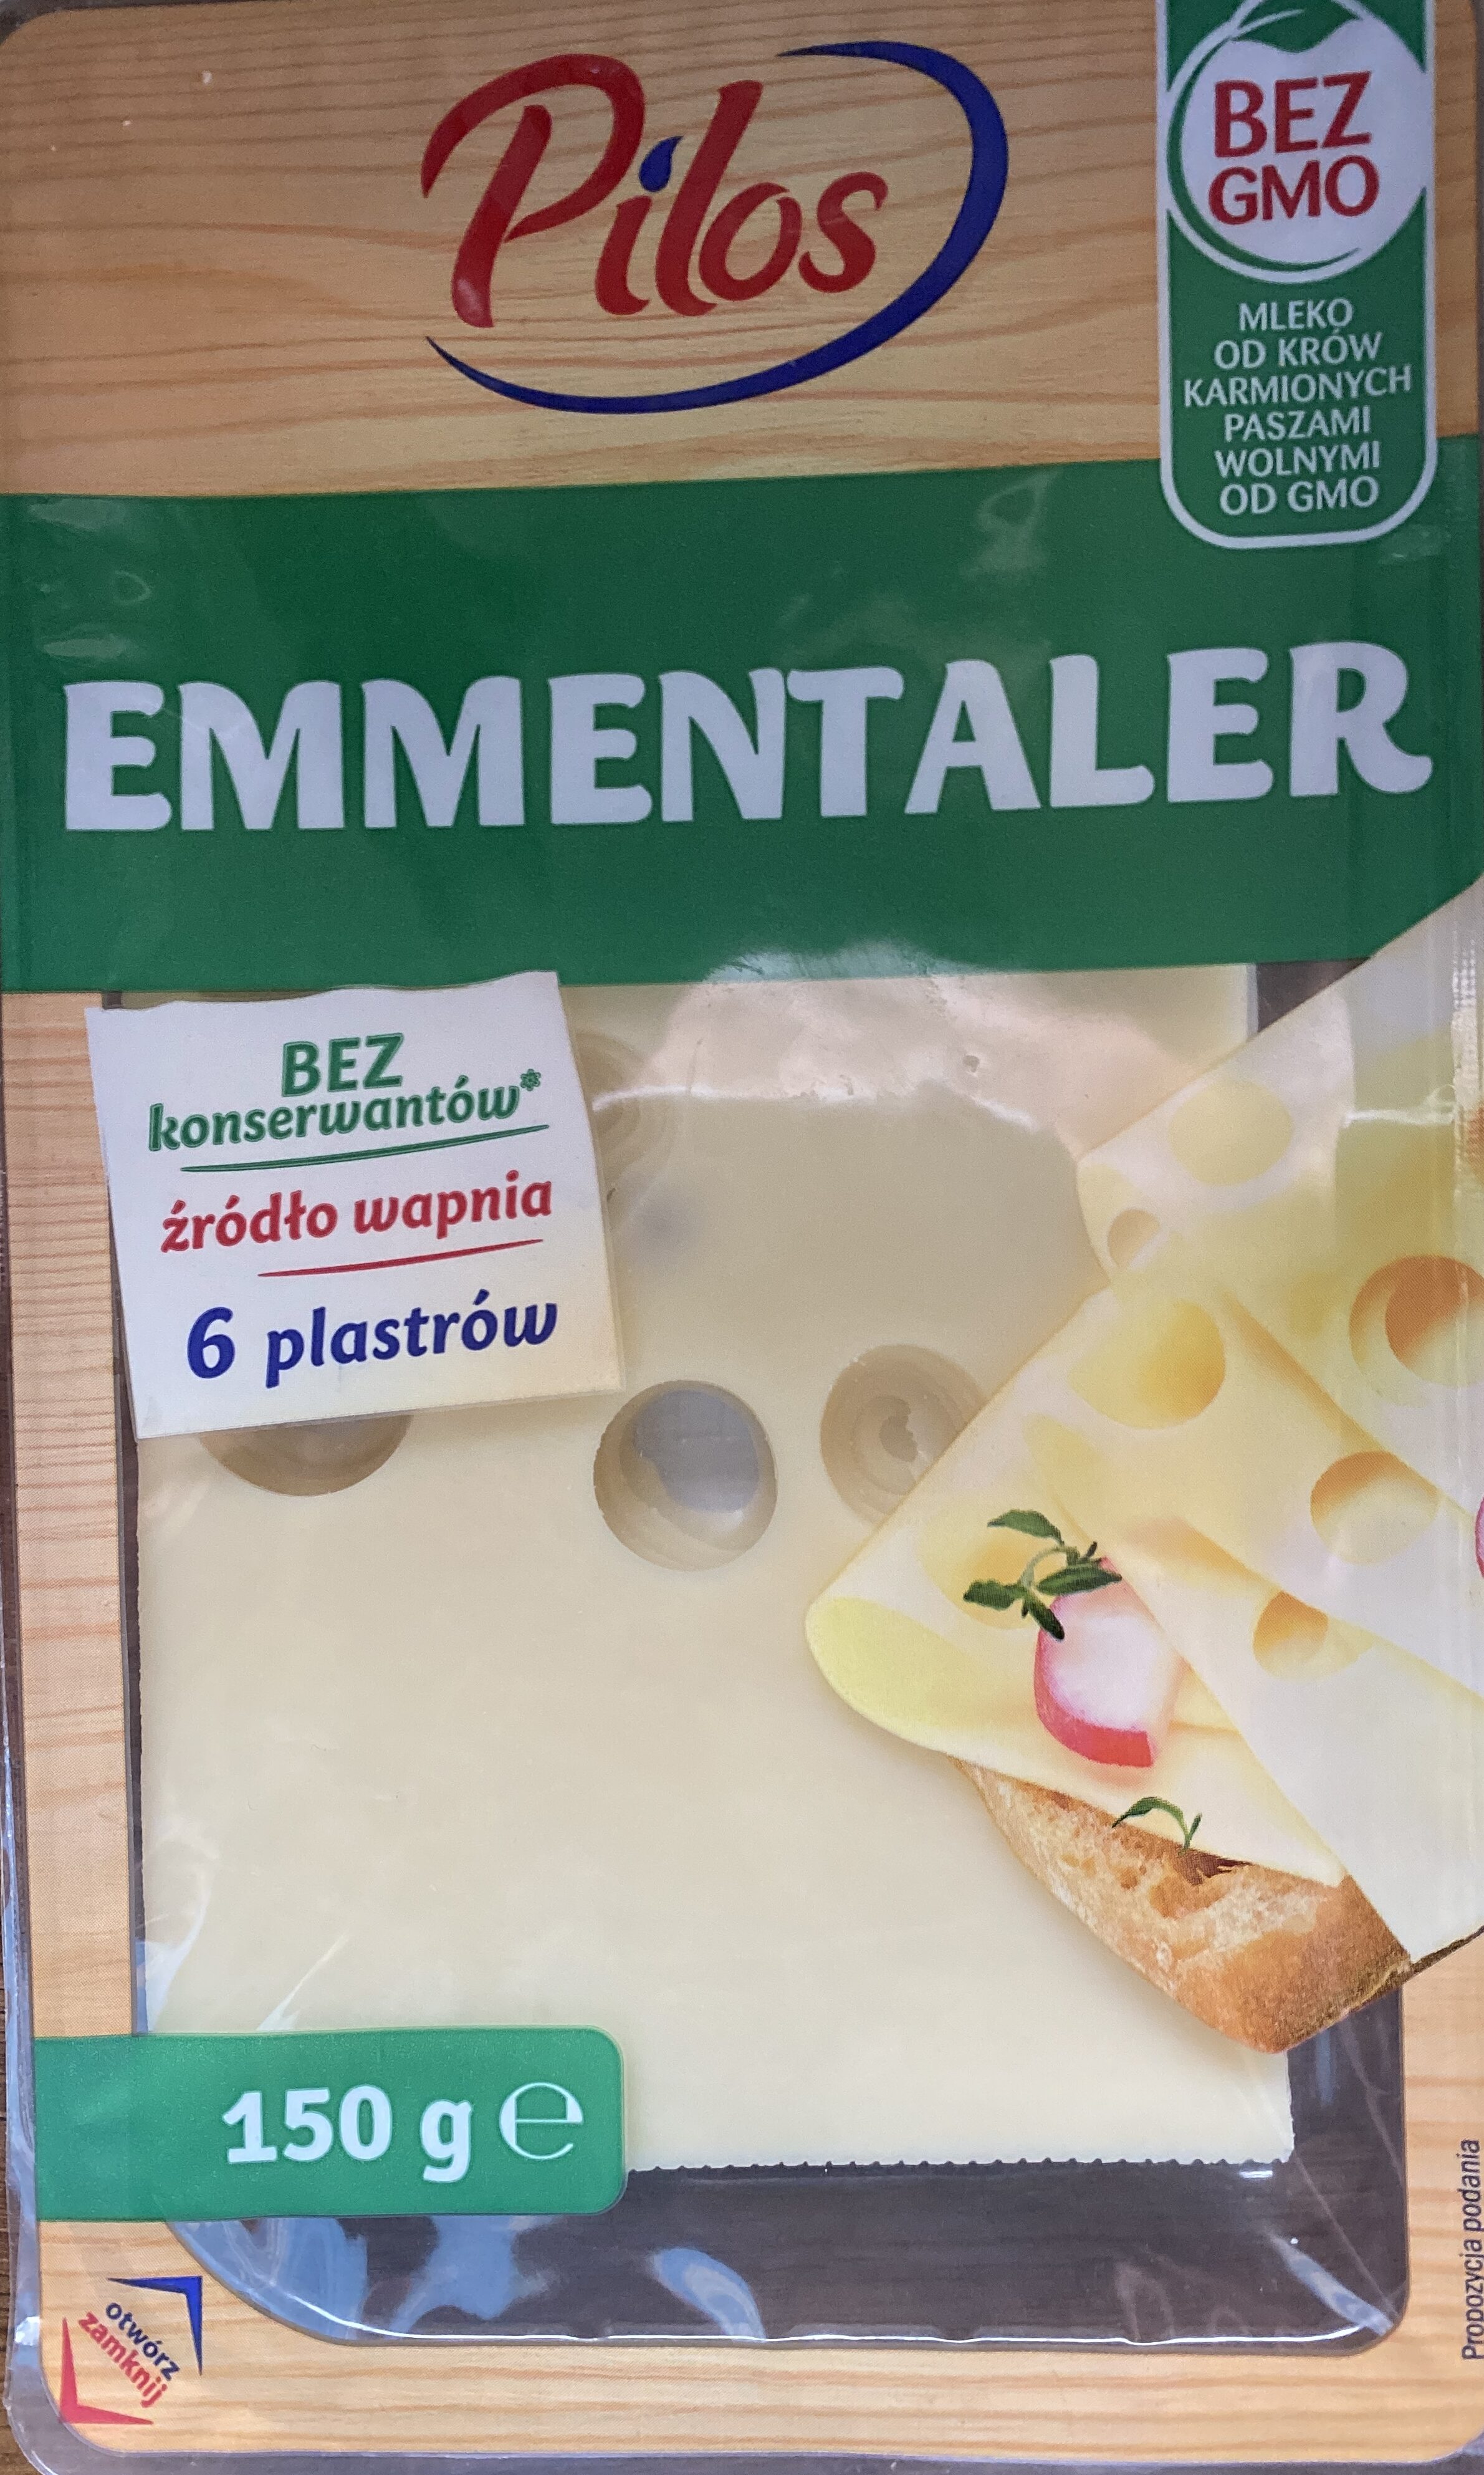 Ser emmentaler - Product - pl